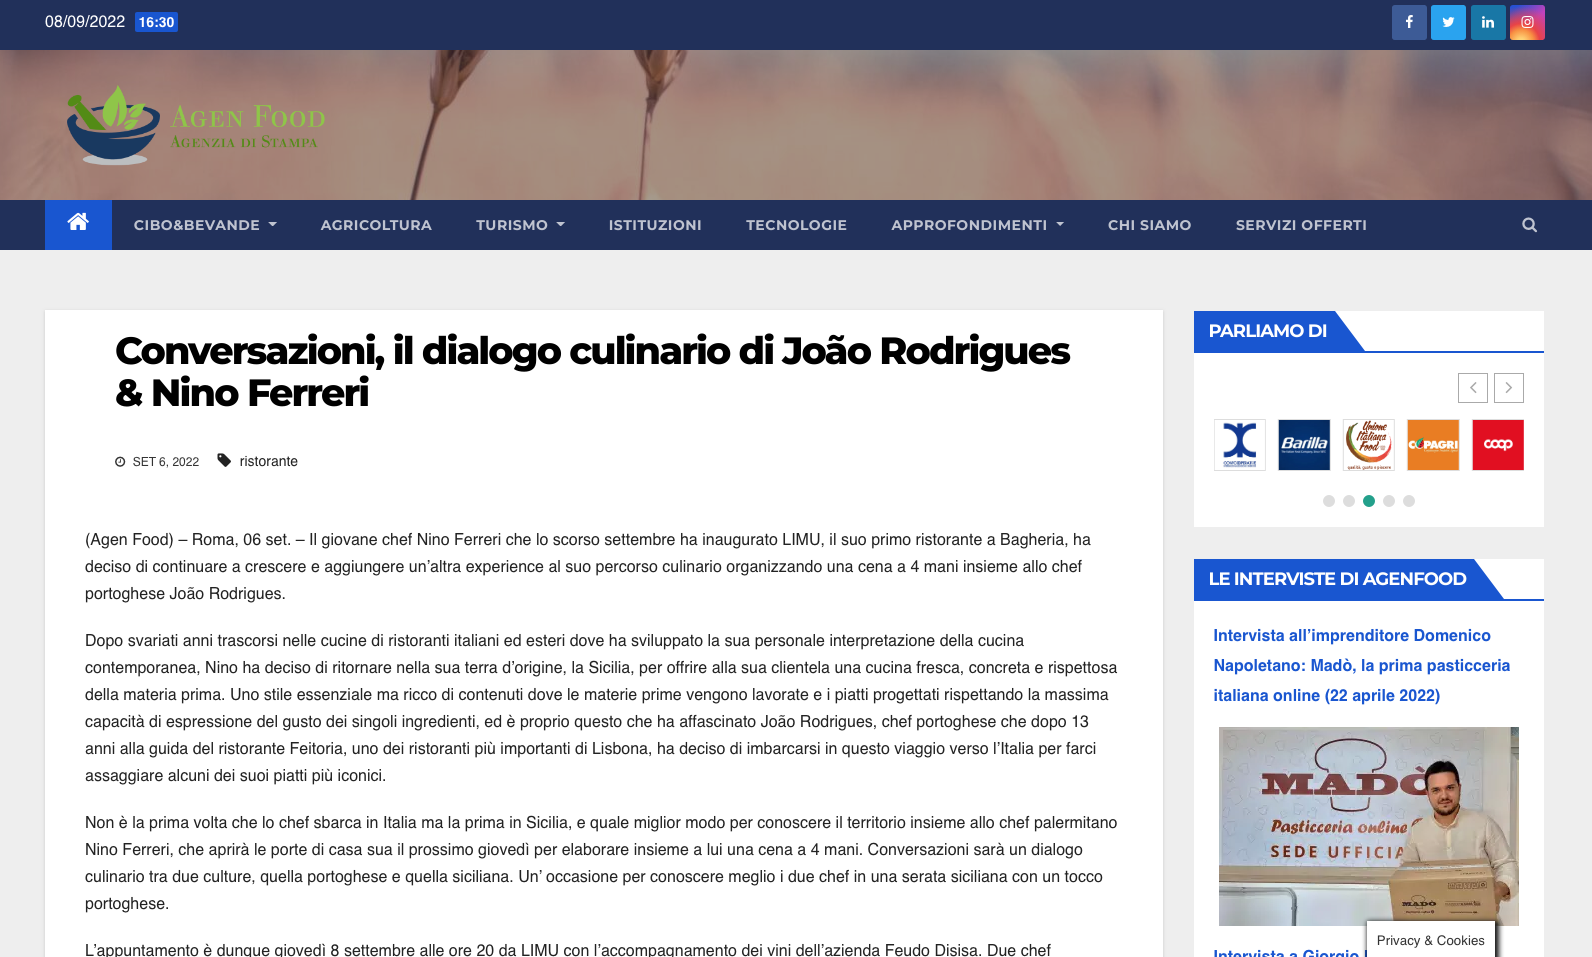 Conversazioni, il dialogo culinario di João Rodrigues & Nino Ferreri